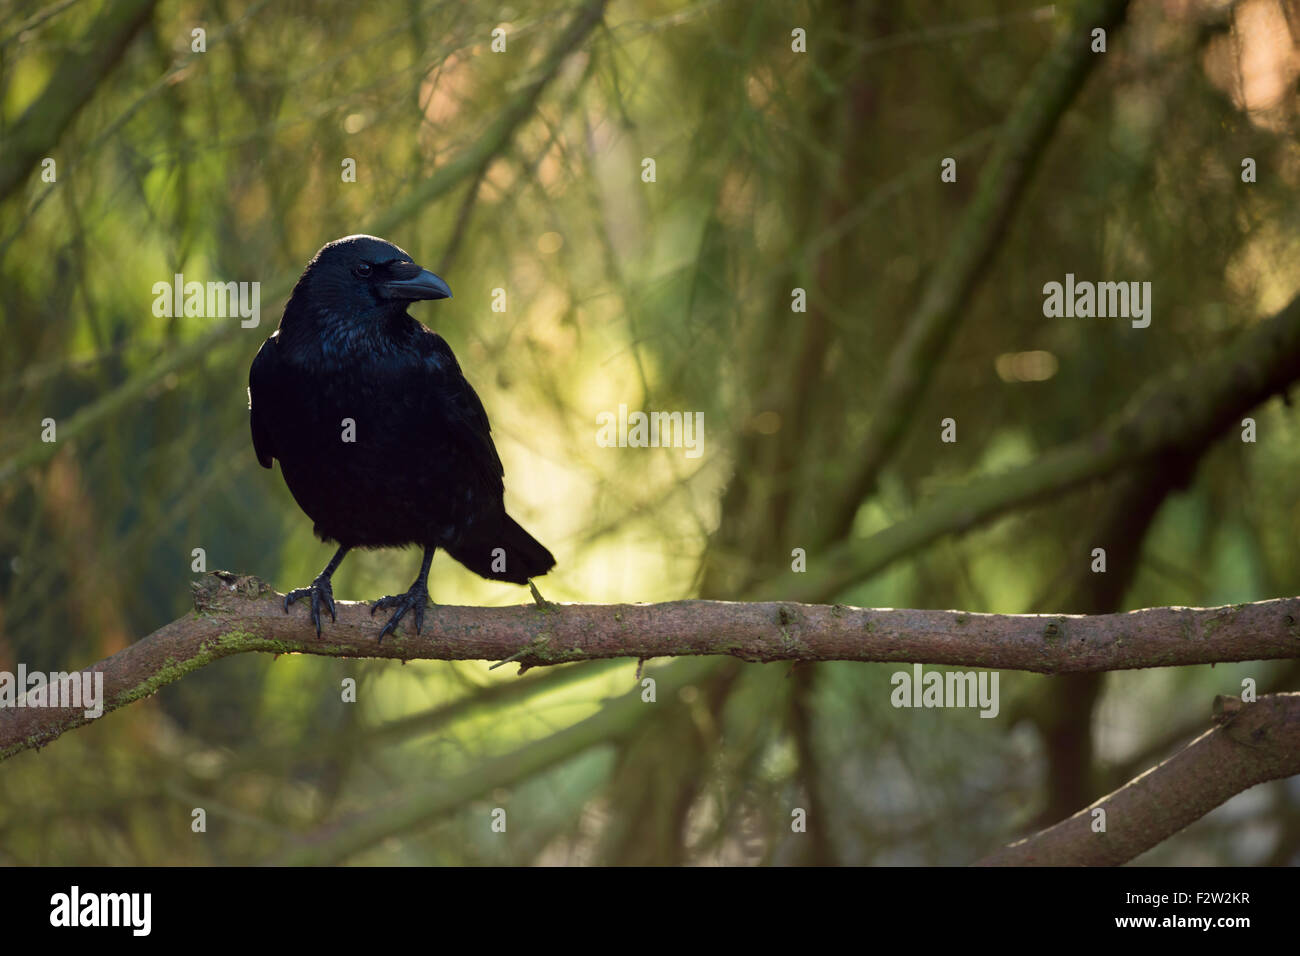 Aufmerksame Carrion Crow / Rabenkrähe (Corvus Corone) hocken in einem Baum vor einem schönen Herbst-farbigen Hintergrund. Stockfoto